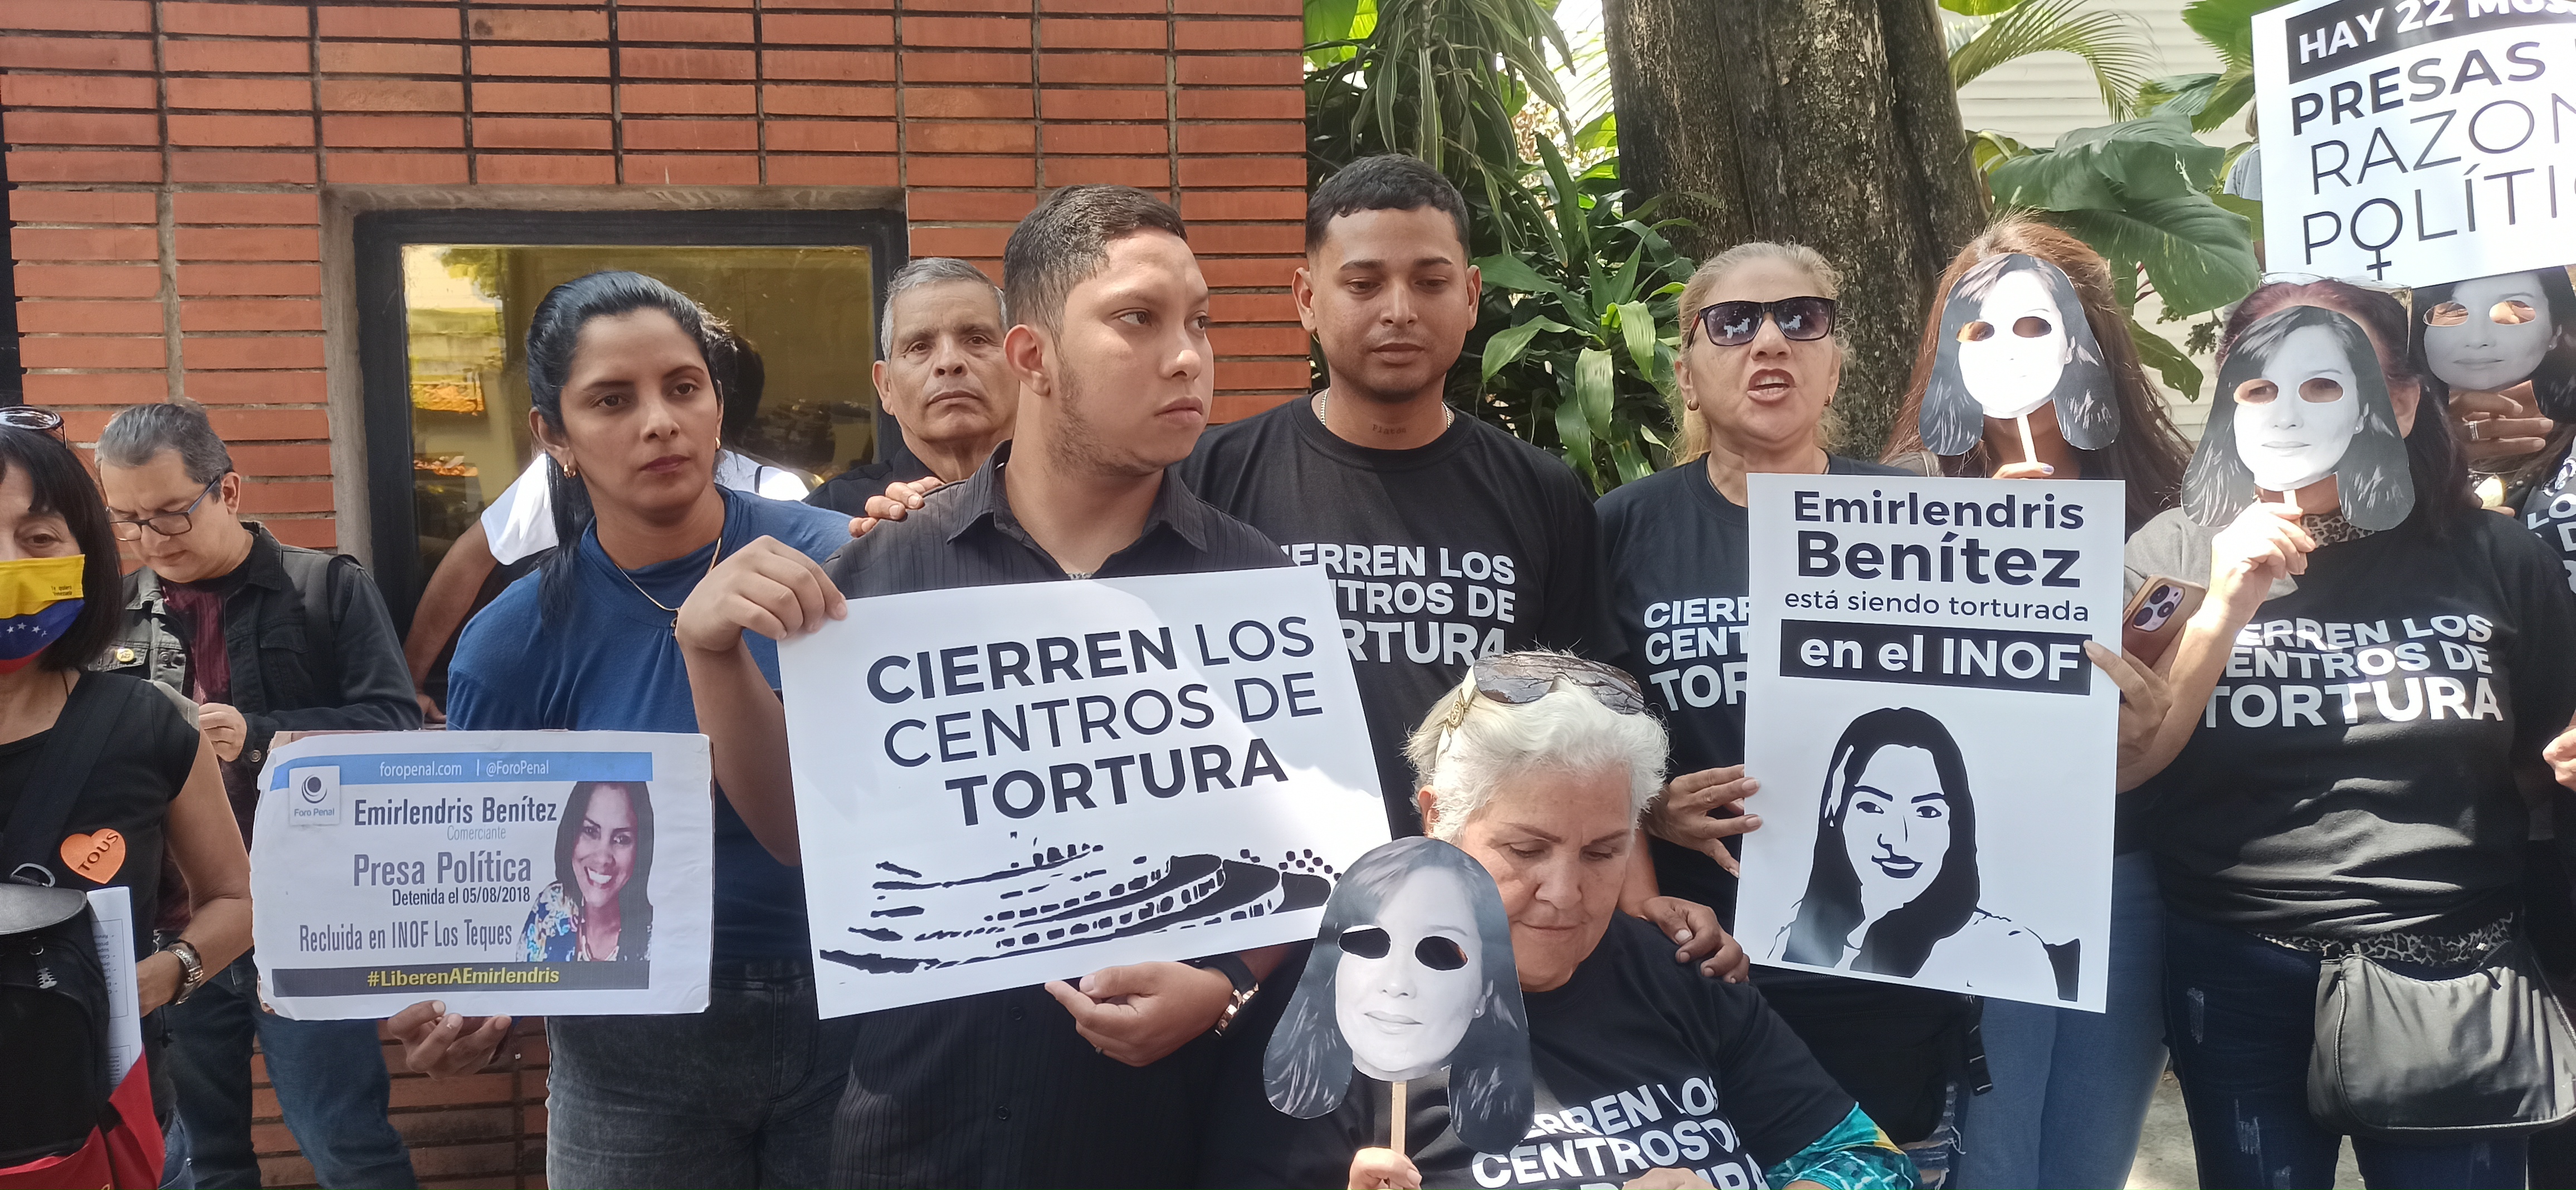 Activistas entregan documento con varias peticiones a la Embajada de España en Caracas este #20Feb (Video)